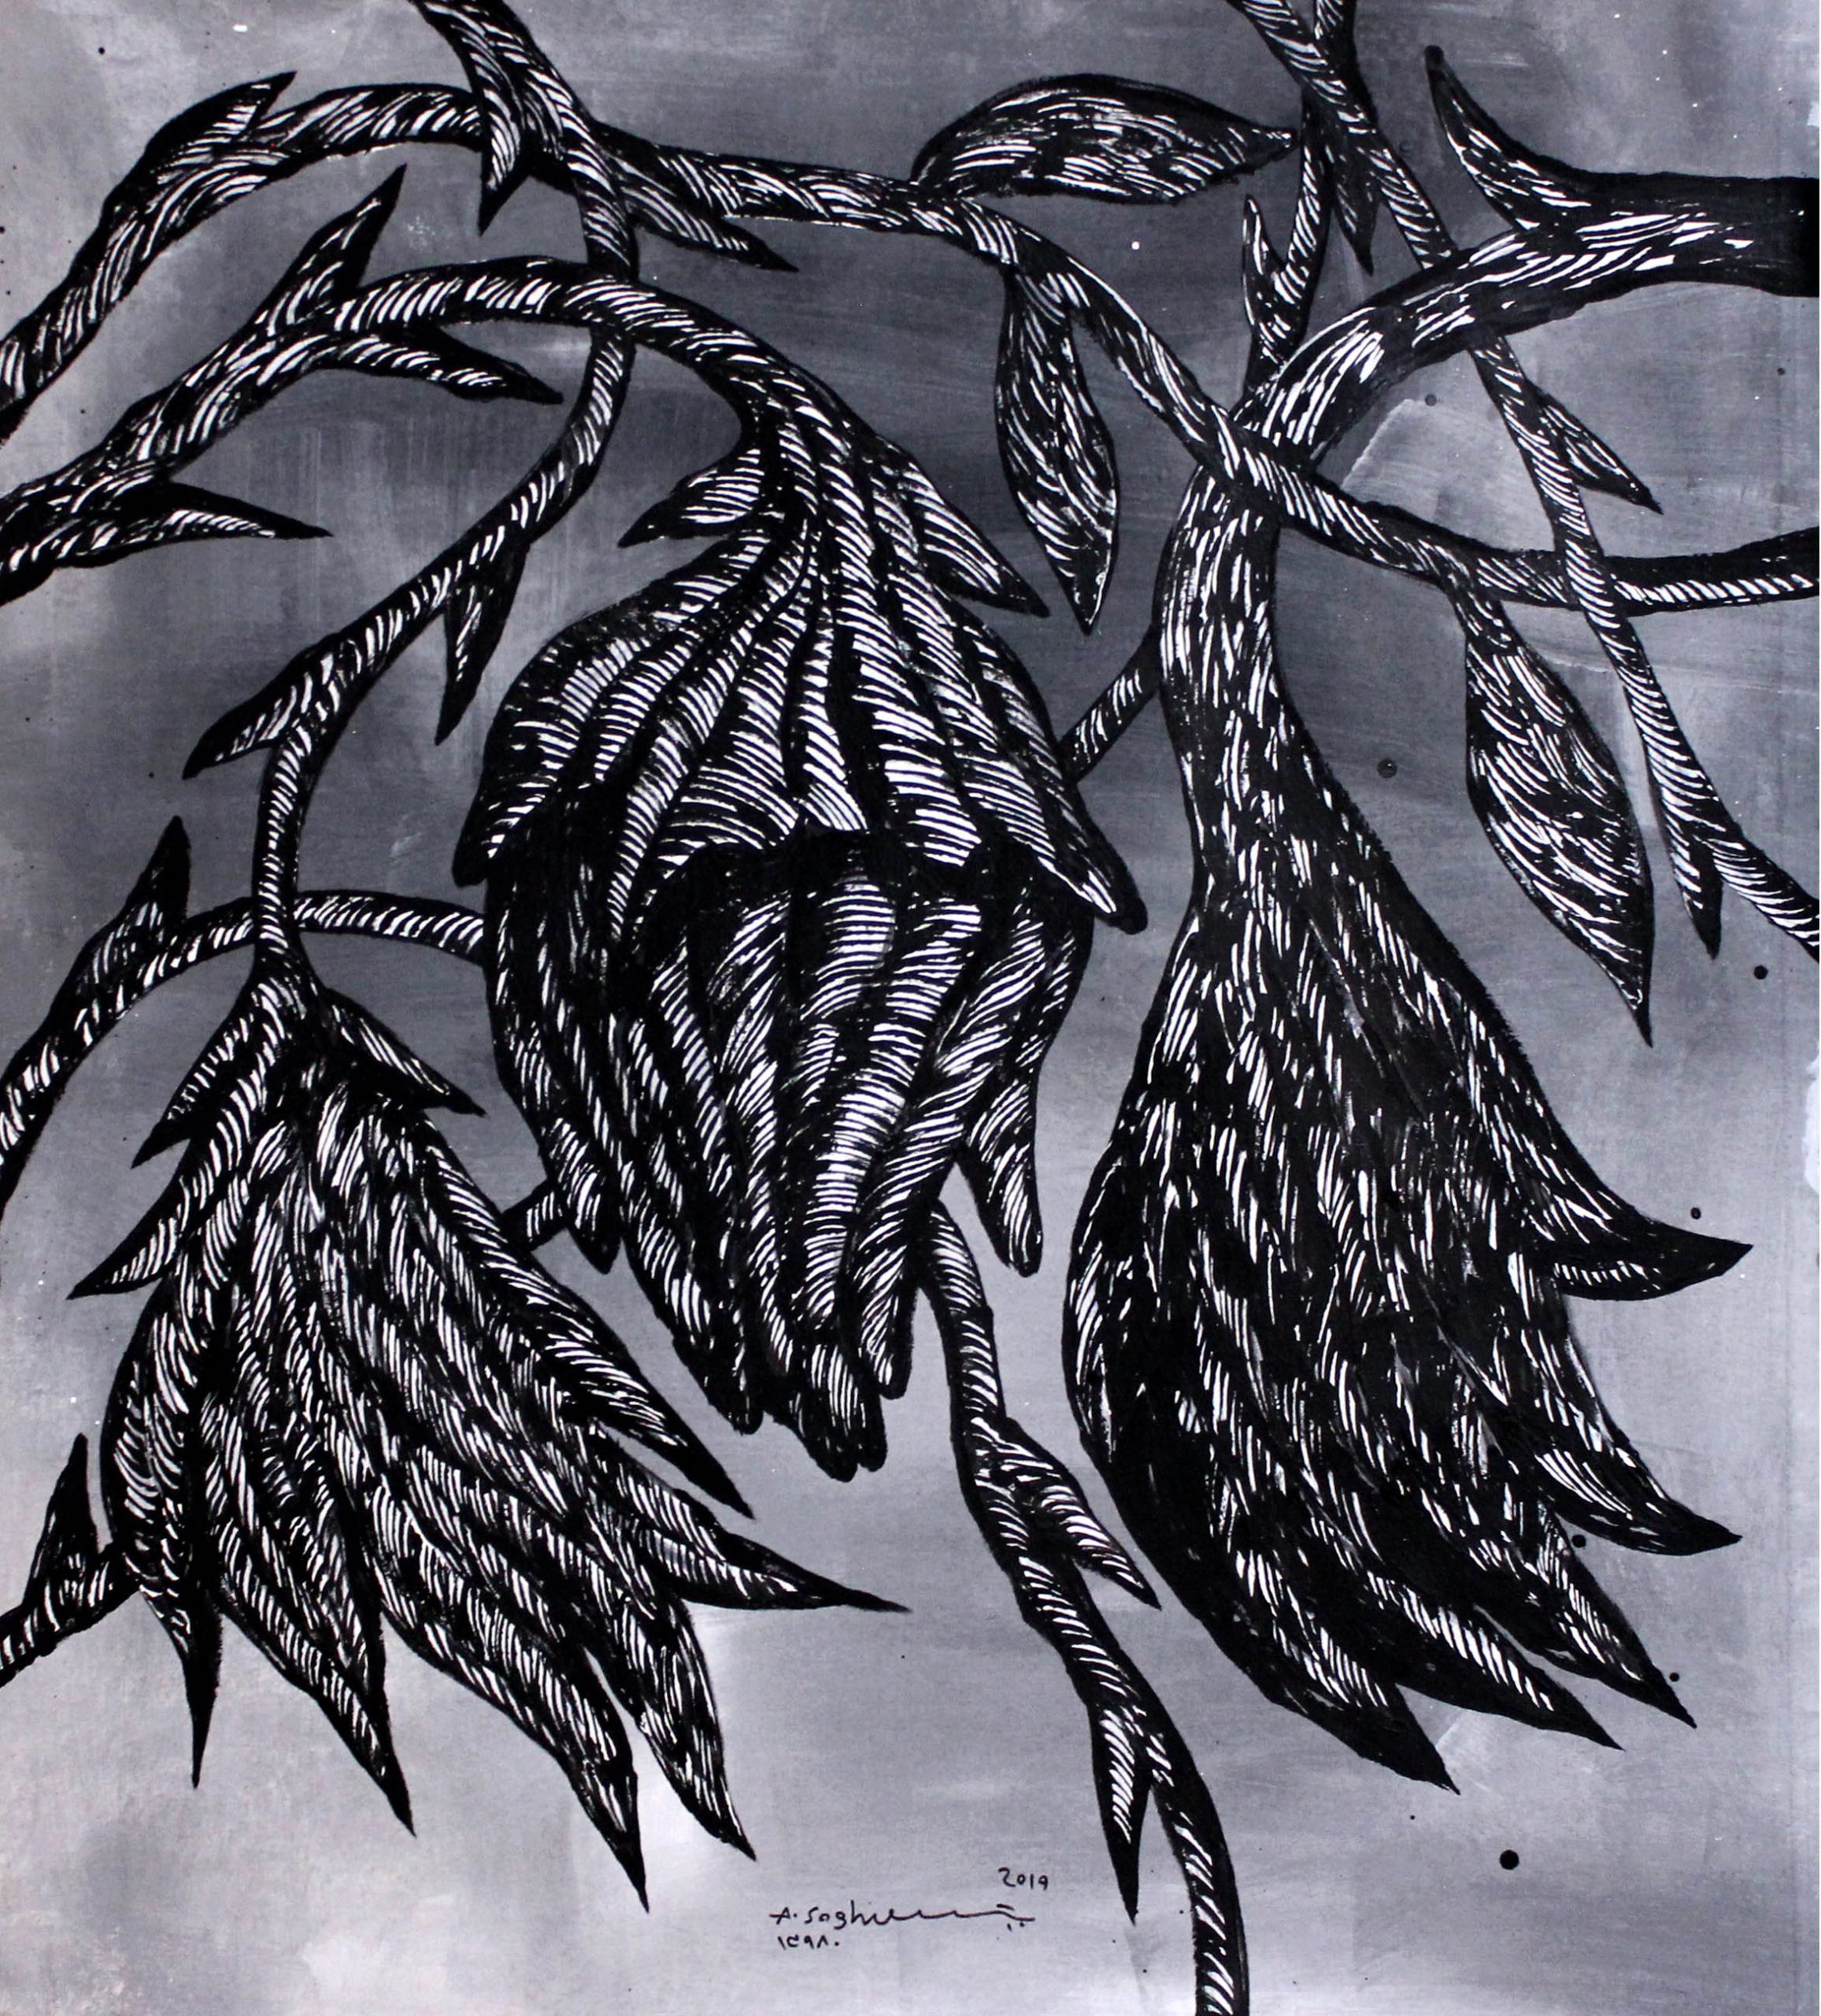 01 Amir Soghrati 110.110 Cm Acrylic on Canvas 2019 Tasian Series scaled - Ten Days Like Flower  | Group Exhibition - Ten Days Like Flower  | Group Exhibition